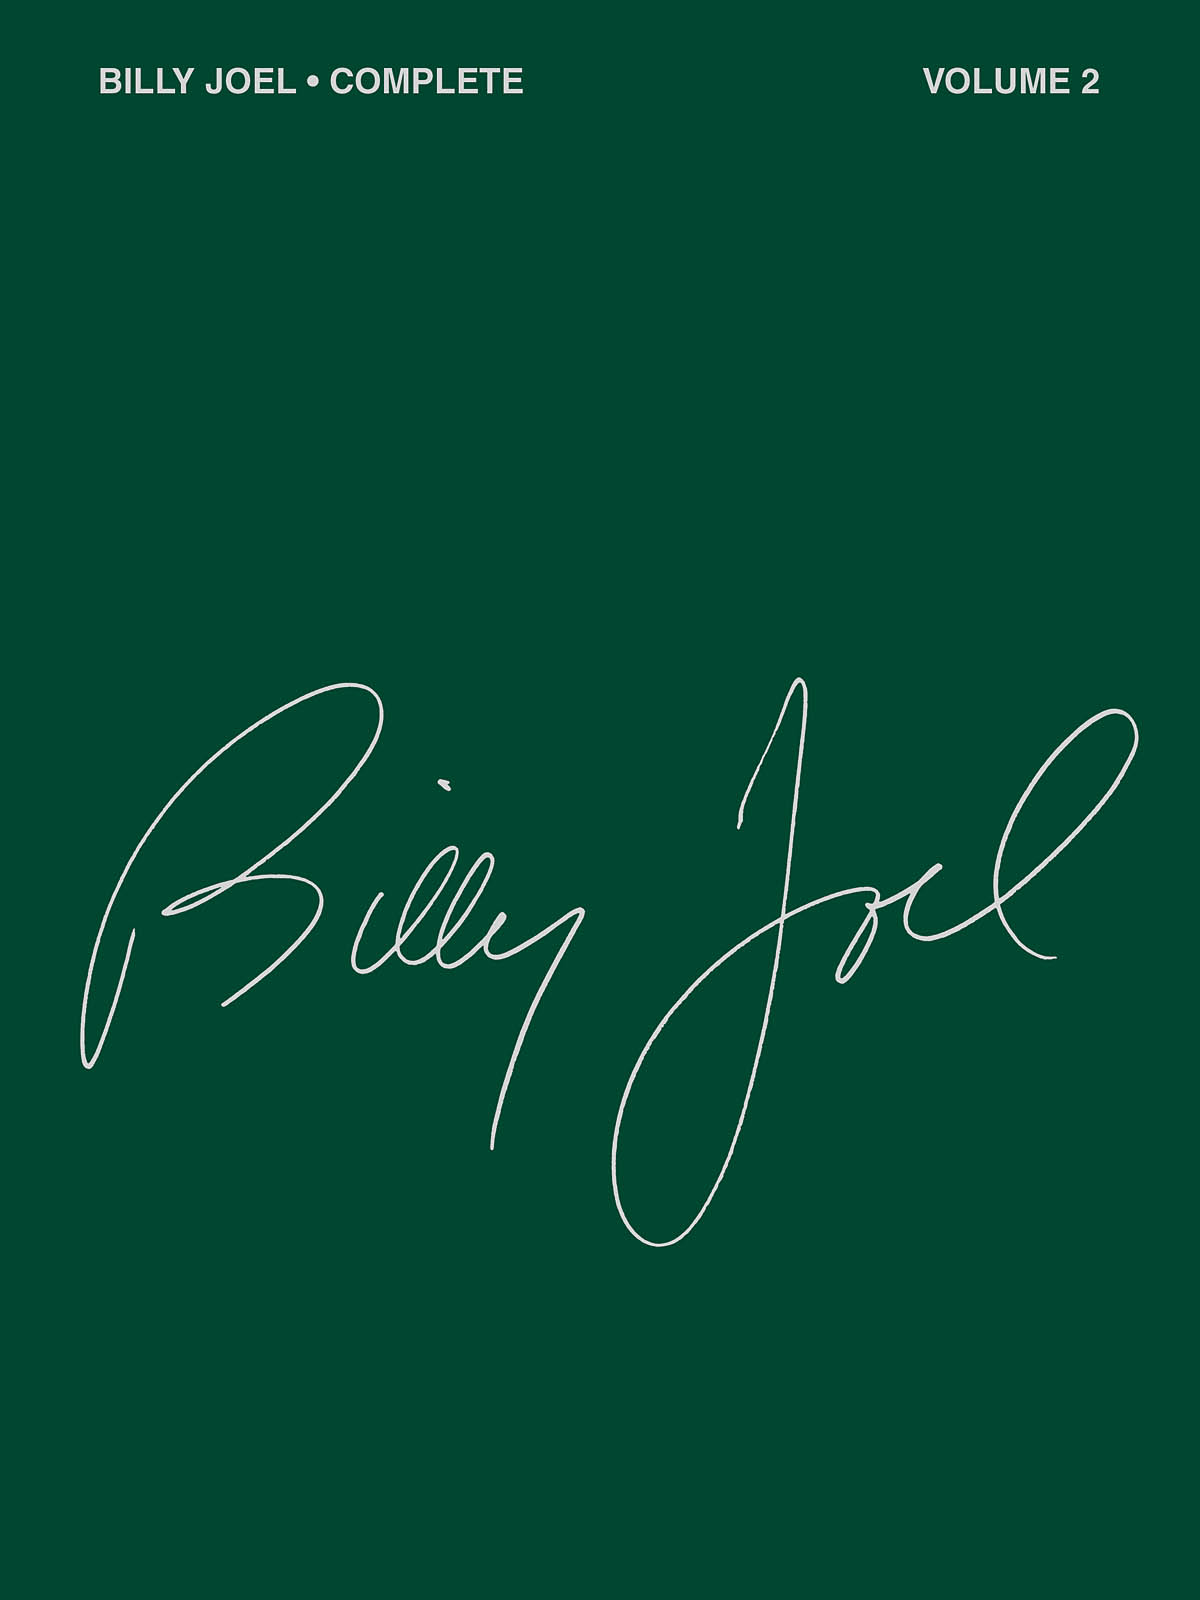 Complete Vol.2 (JOEL BILLY)